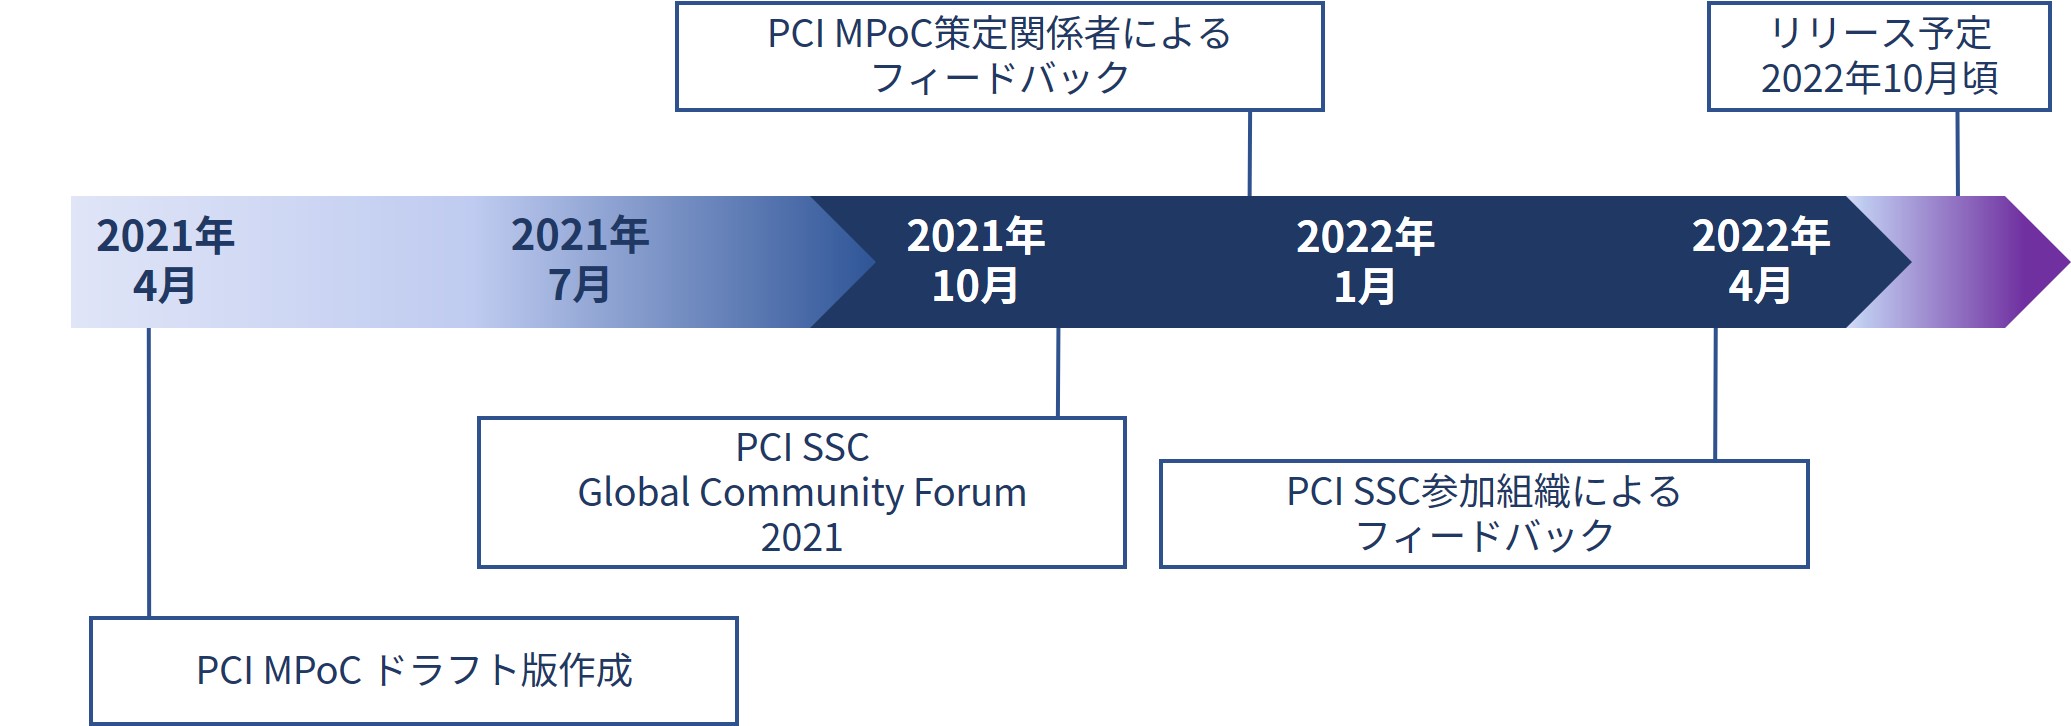 図 2_PCI MPoC策定に向けて発表されたスケジュール